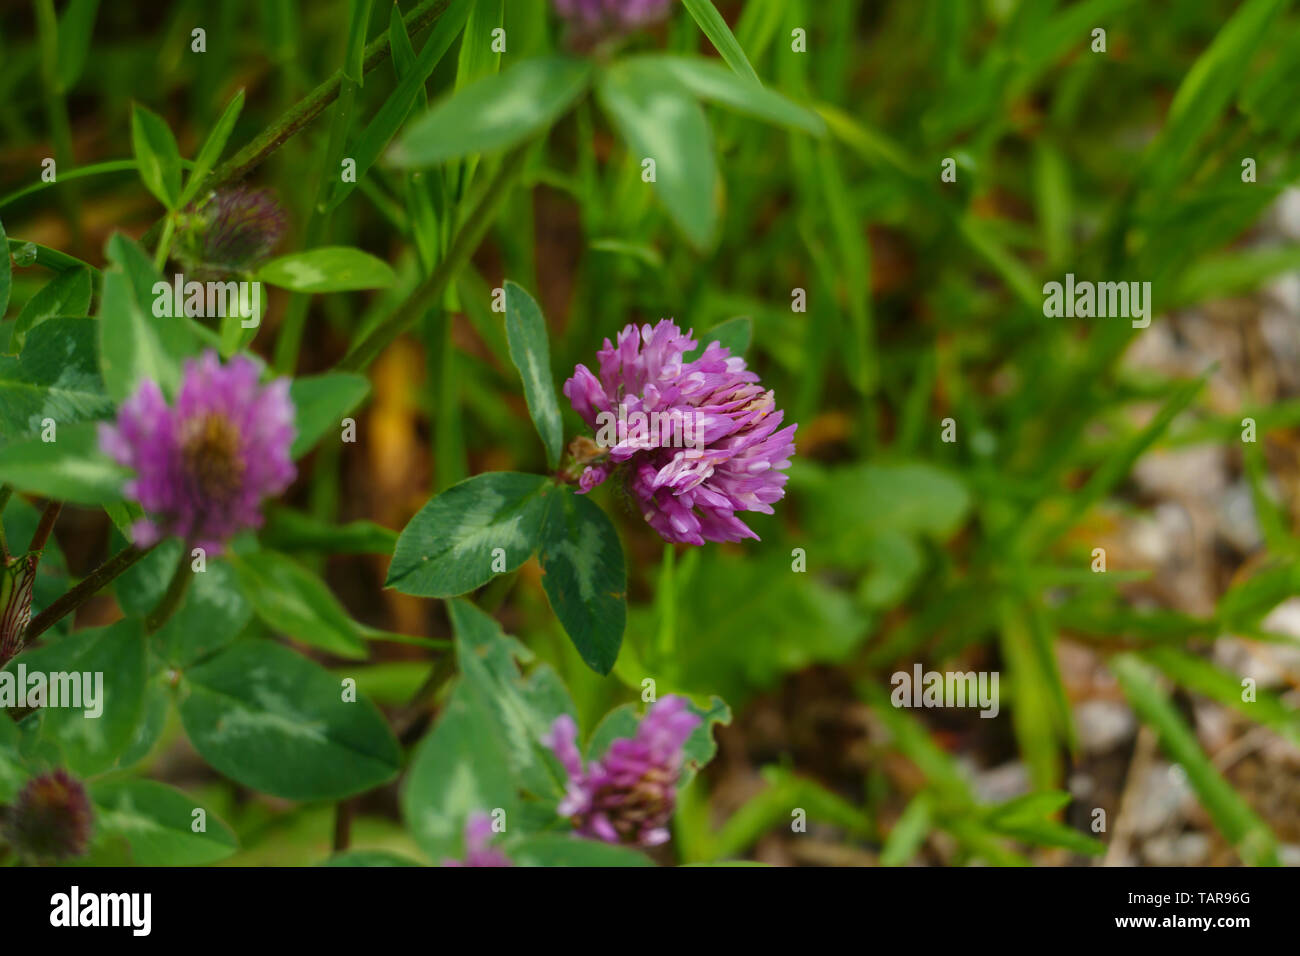 Roter Wiesen Klee Pflanze, mit lila, violett farbener Blüte und grünen Blättern, auf der Wiese Foto Stock